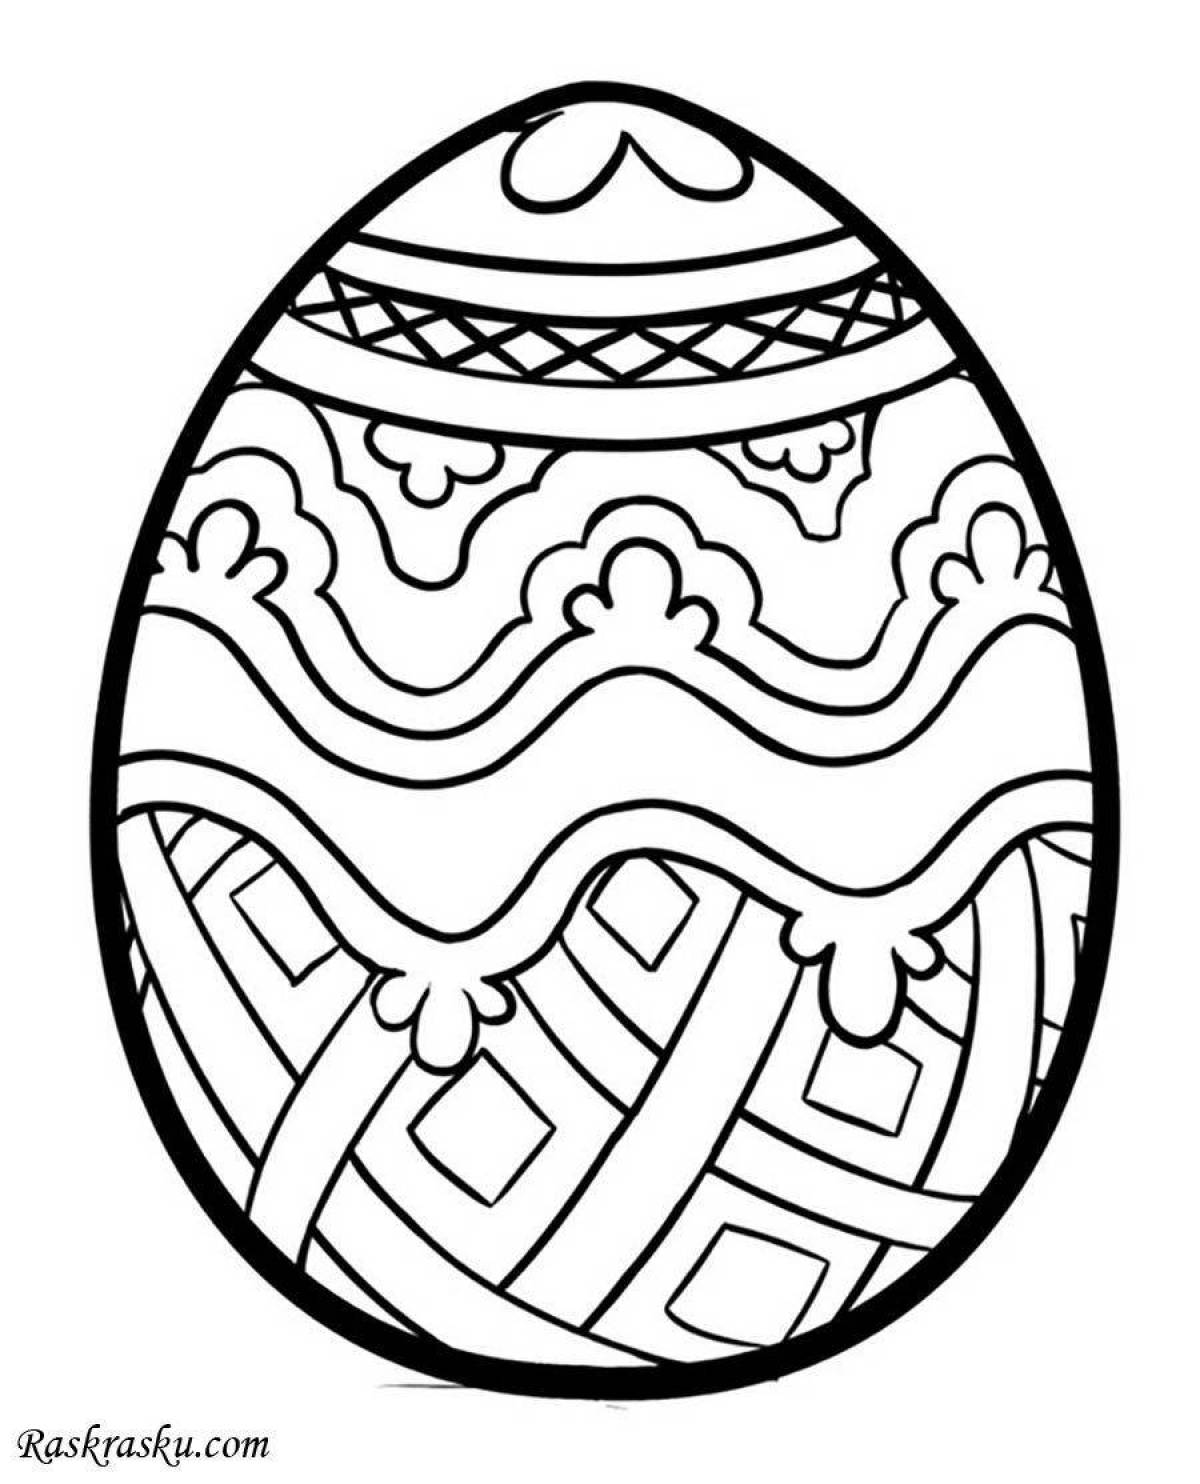 Праздничная раскраска яиц для детей